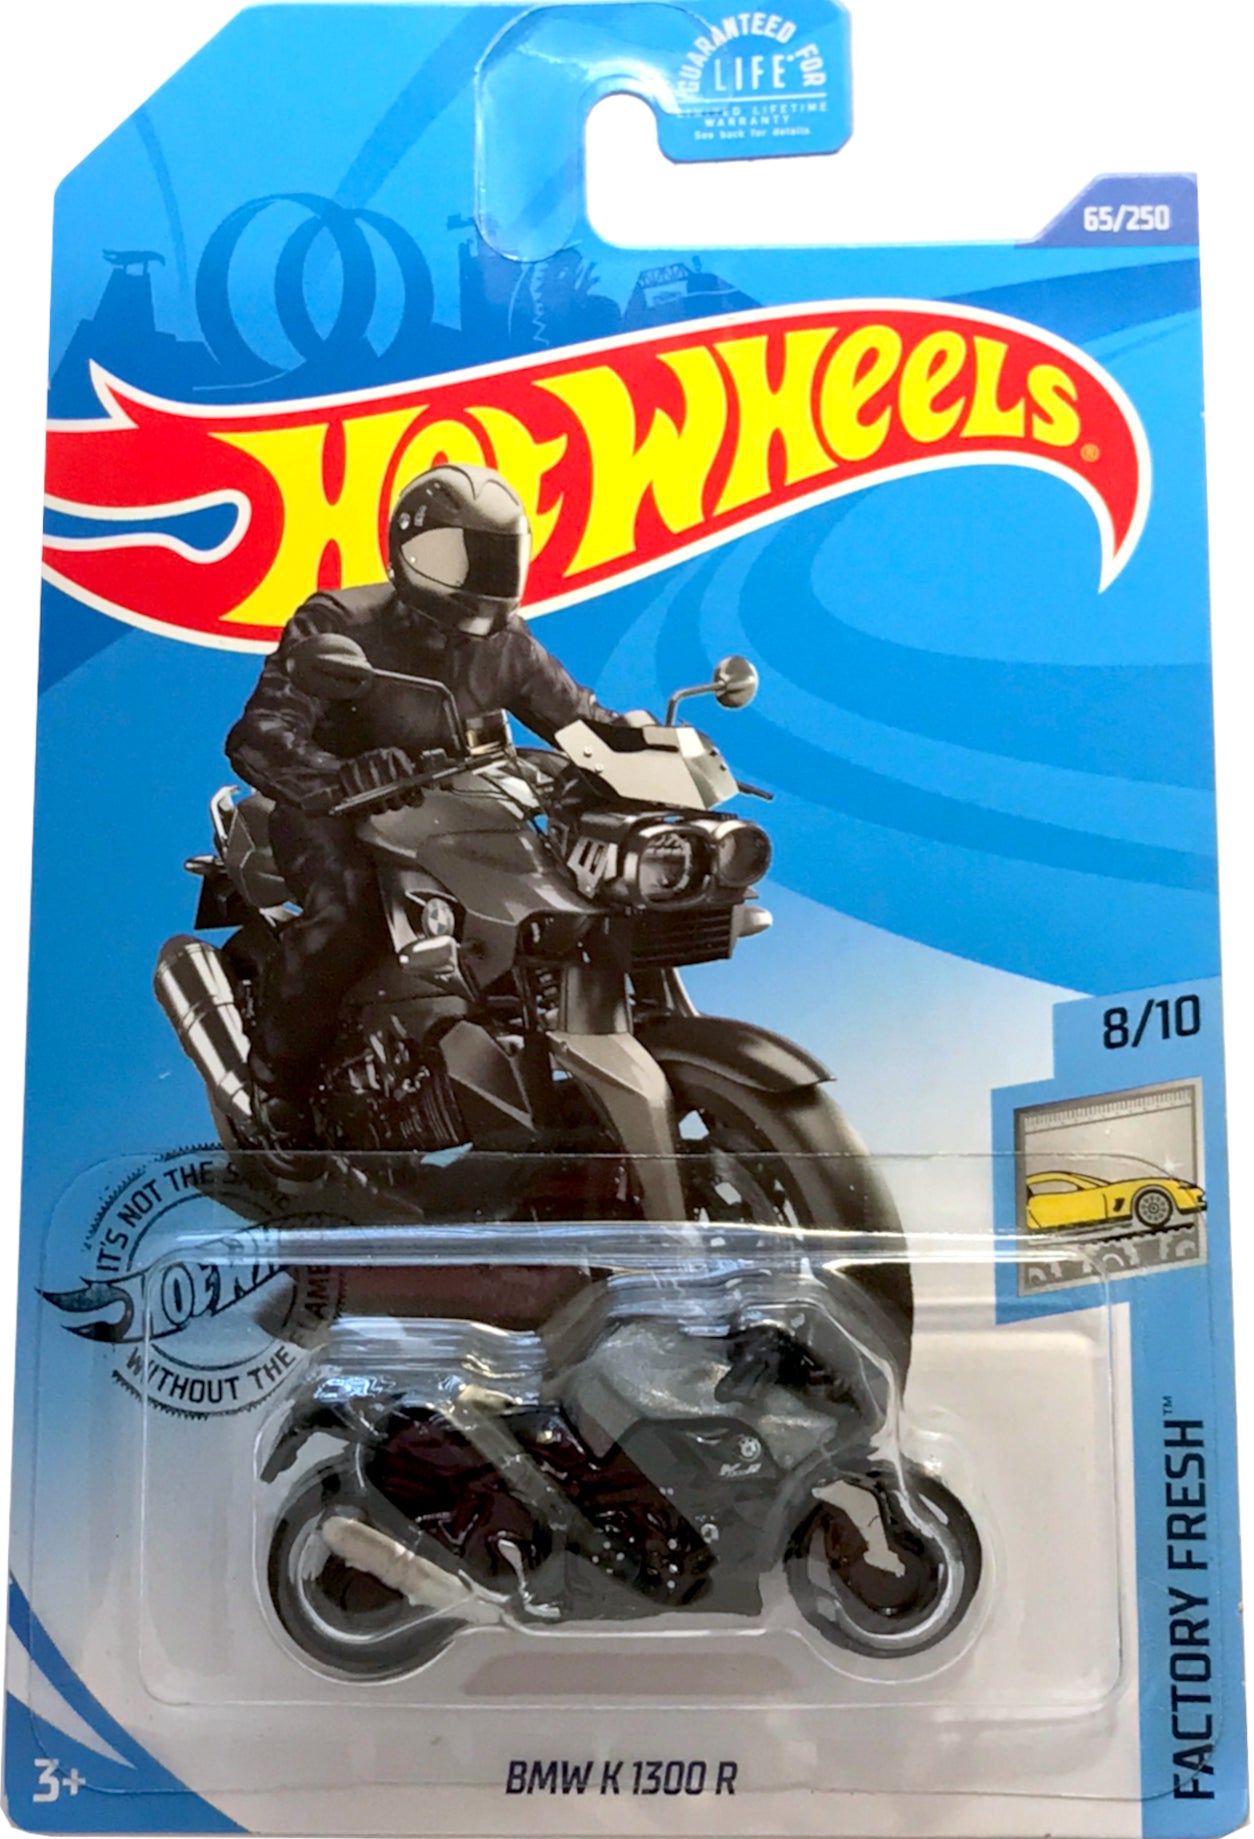 2020 Hot Wheels Mainline #065 - BMW K1300R Motorcycle (Black) GHF94